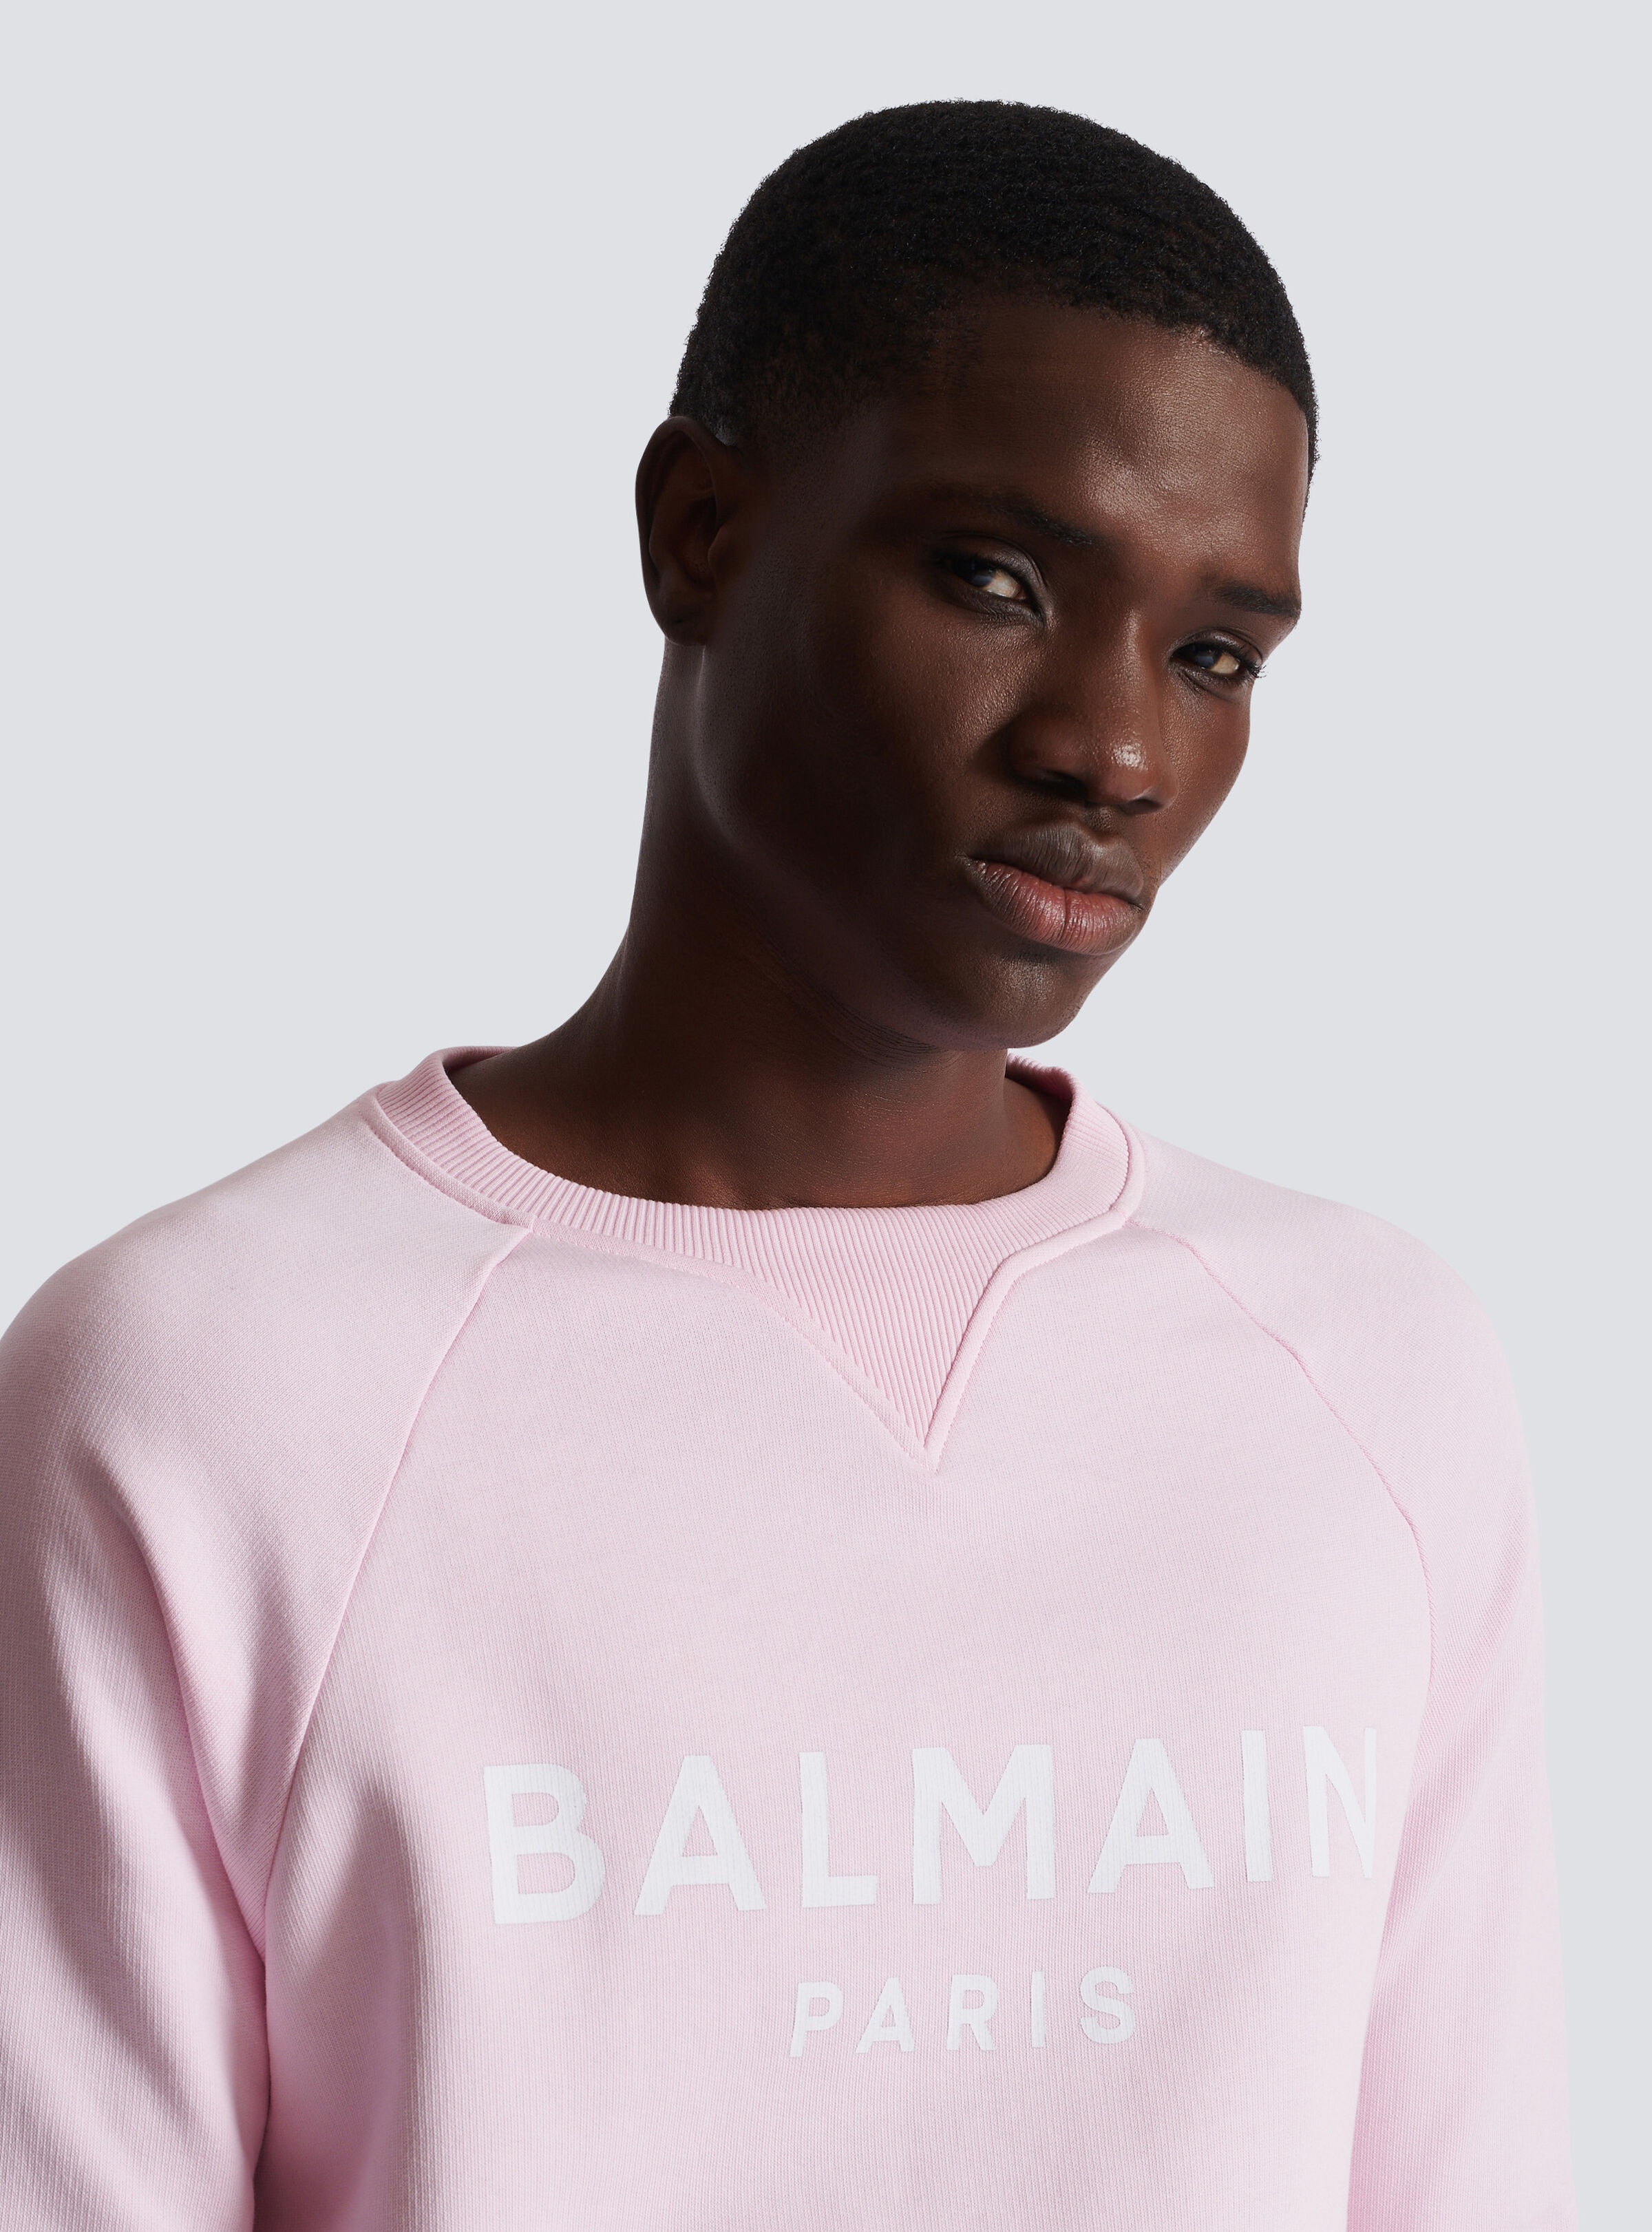 Balmain Paris printed sweatshirt - 7